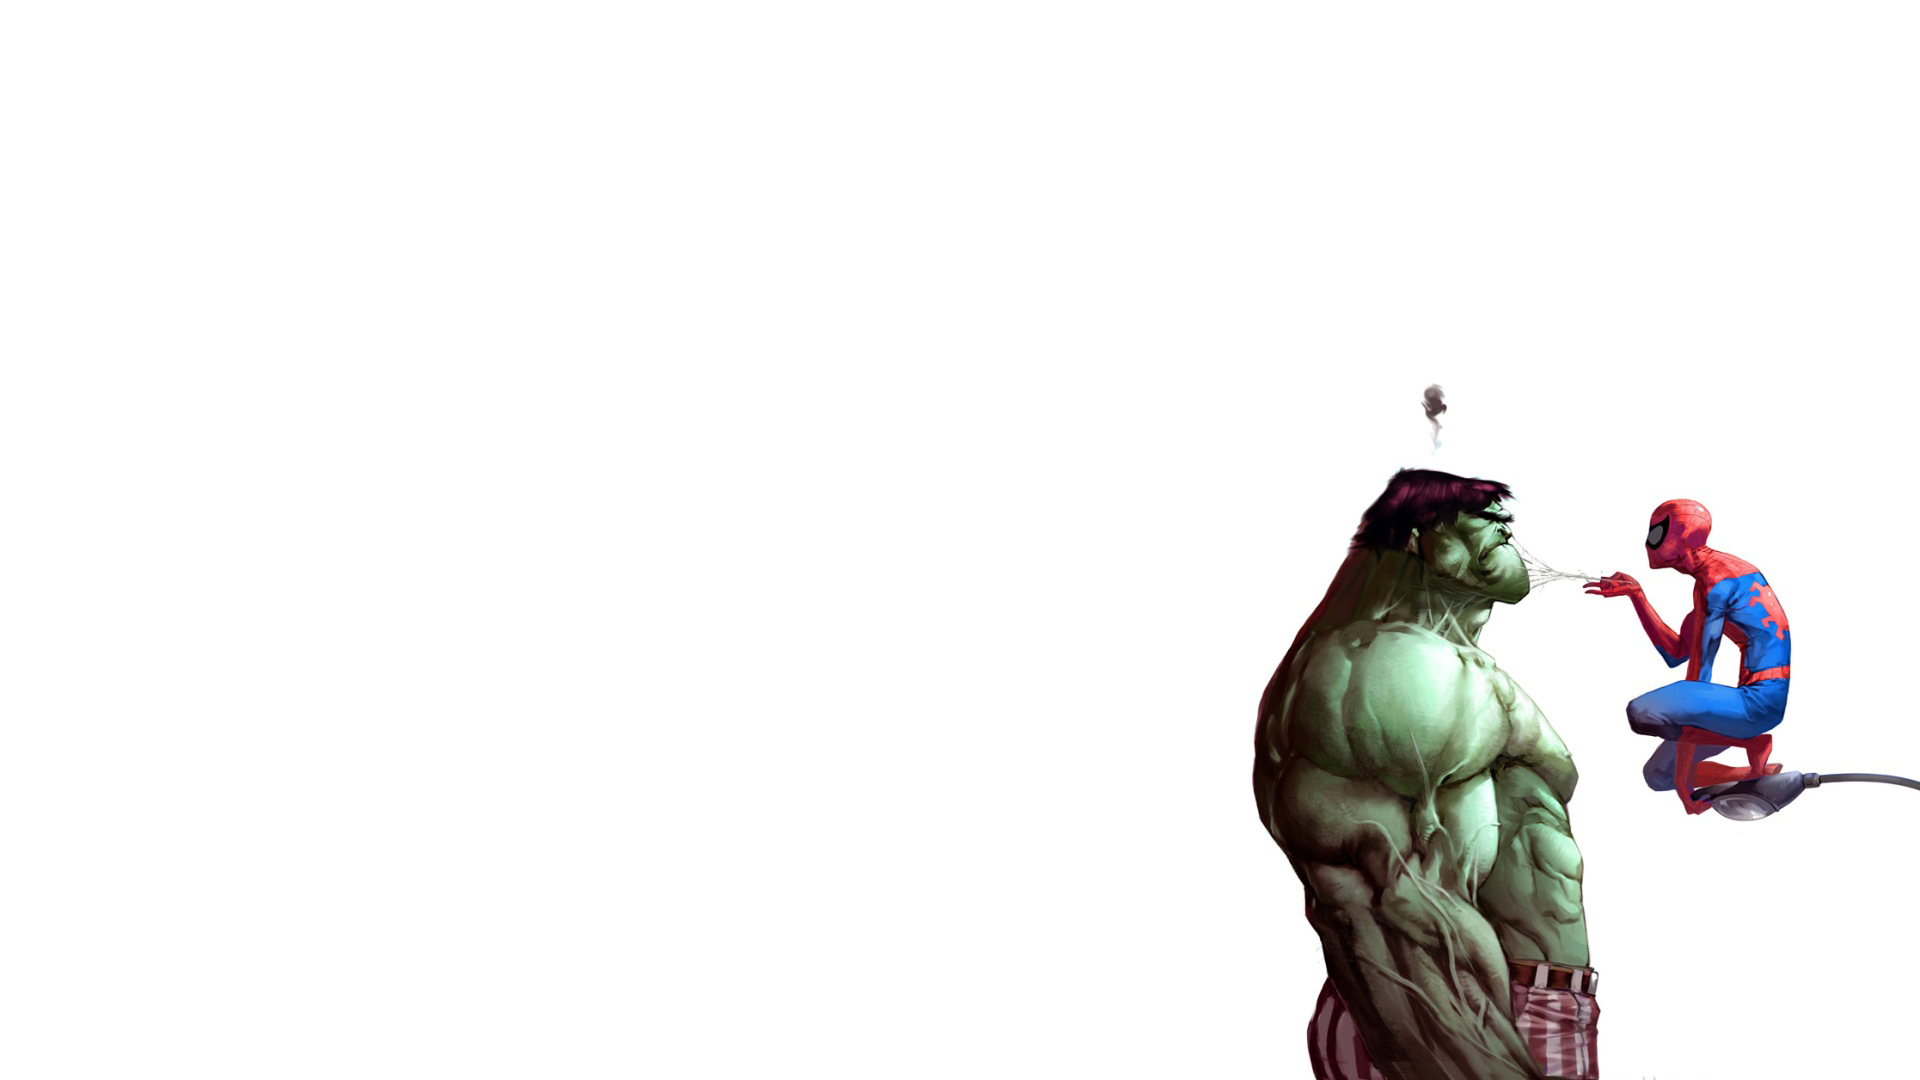 Hulk (comic character), comics, Spider-Man, Marvel Comics - desktop wallpaper